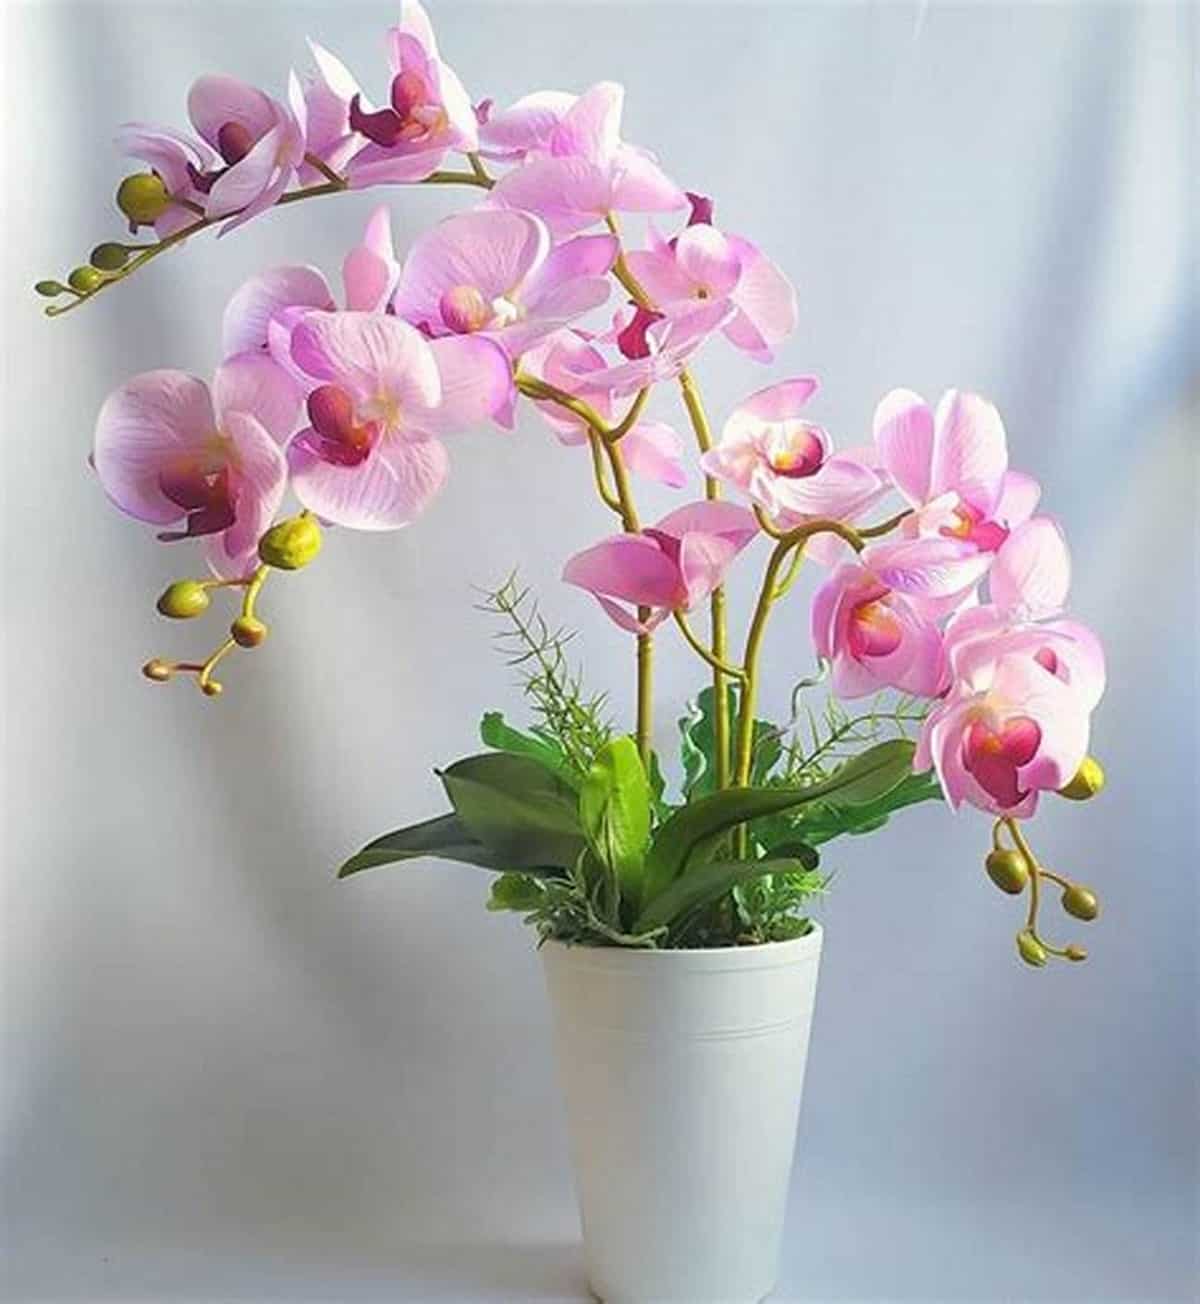 fleurir indéfiniment vos orchidées